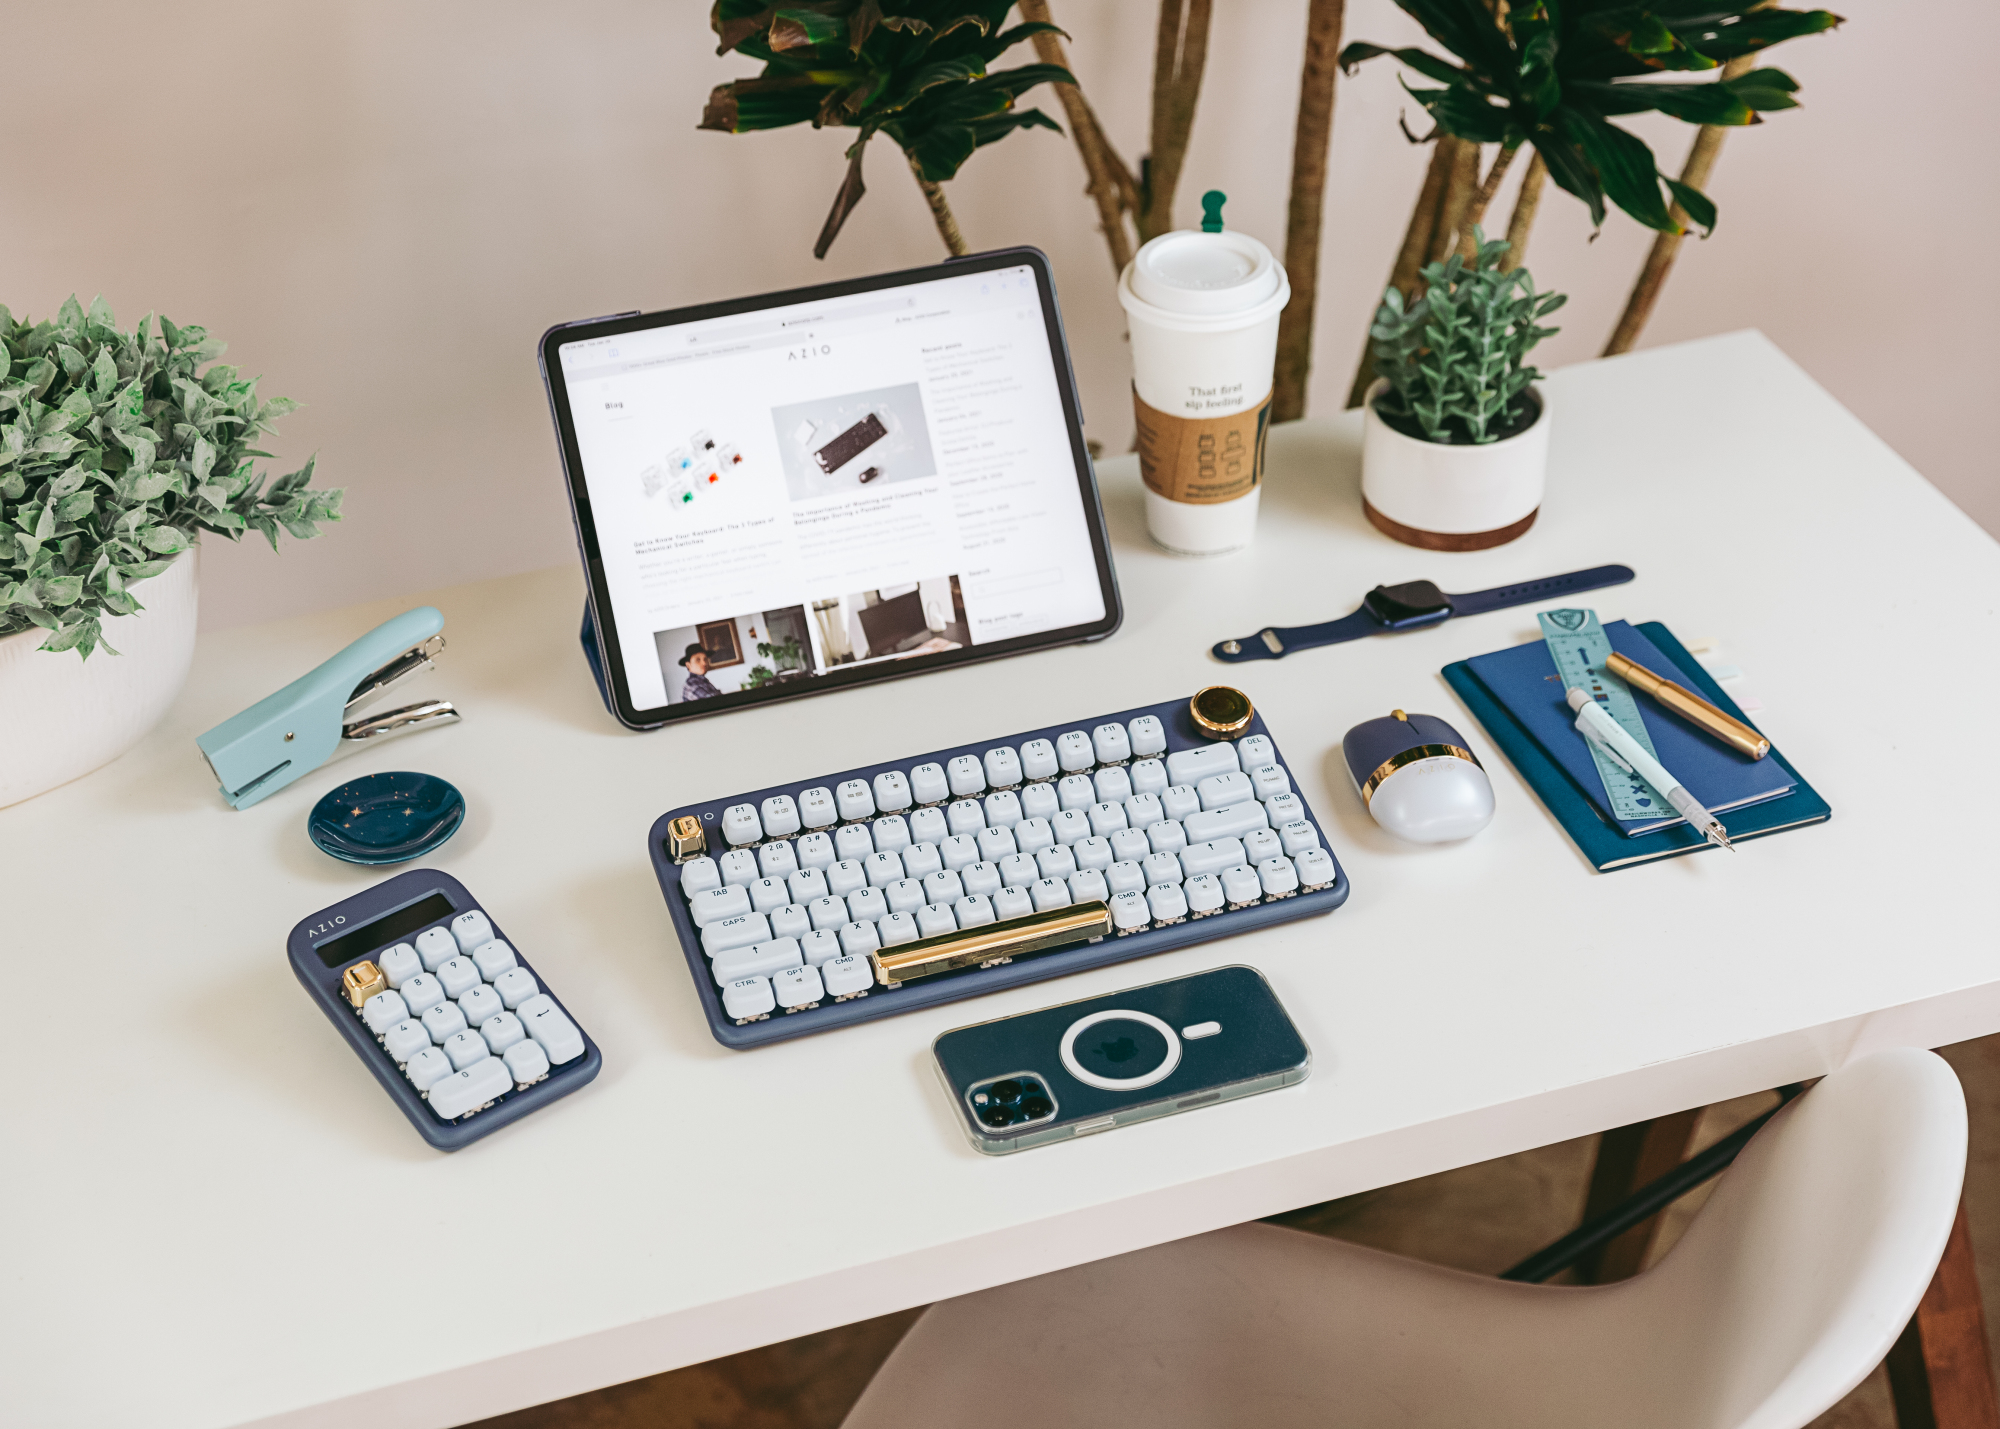 Une configuration de travail sur un bureau blanc composé d'un iPad et d'un clavier bleu foncé avec des accents dorés, calculatrice assortie.  souris assortie et un iPhone face vers le bas.